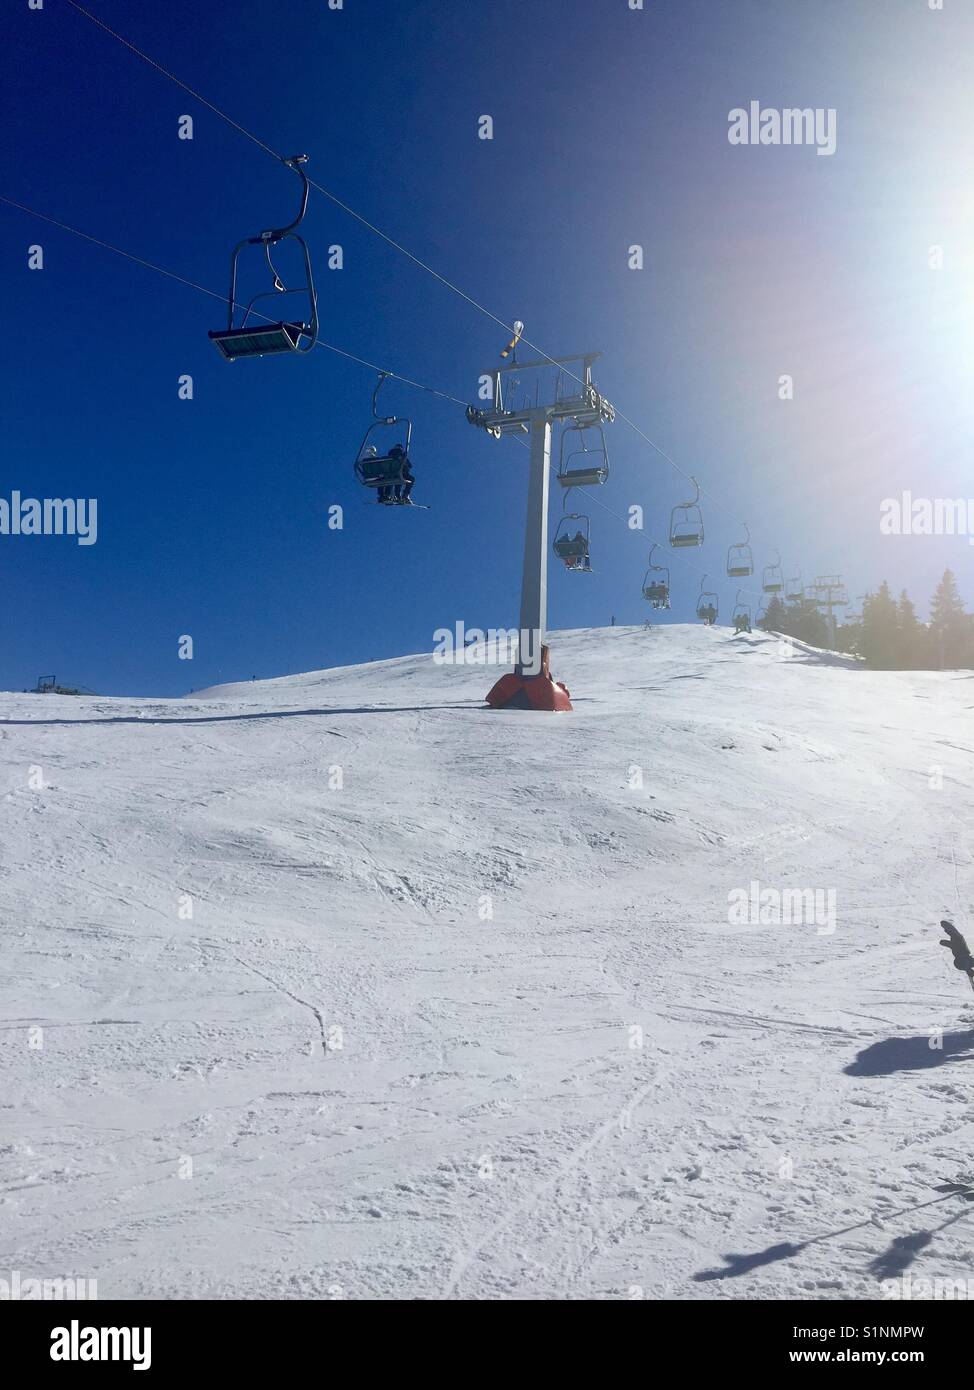 Skilift in kössen Austria Stock Photo